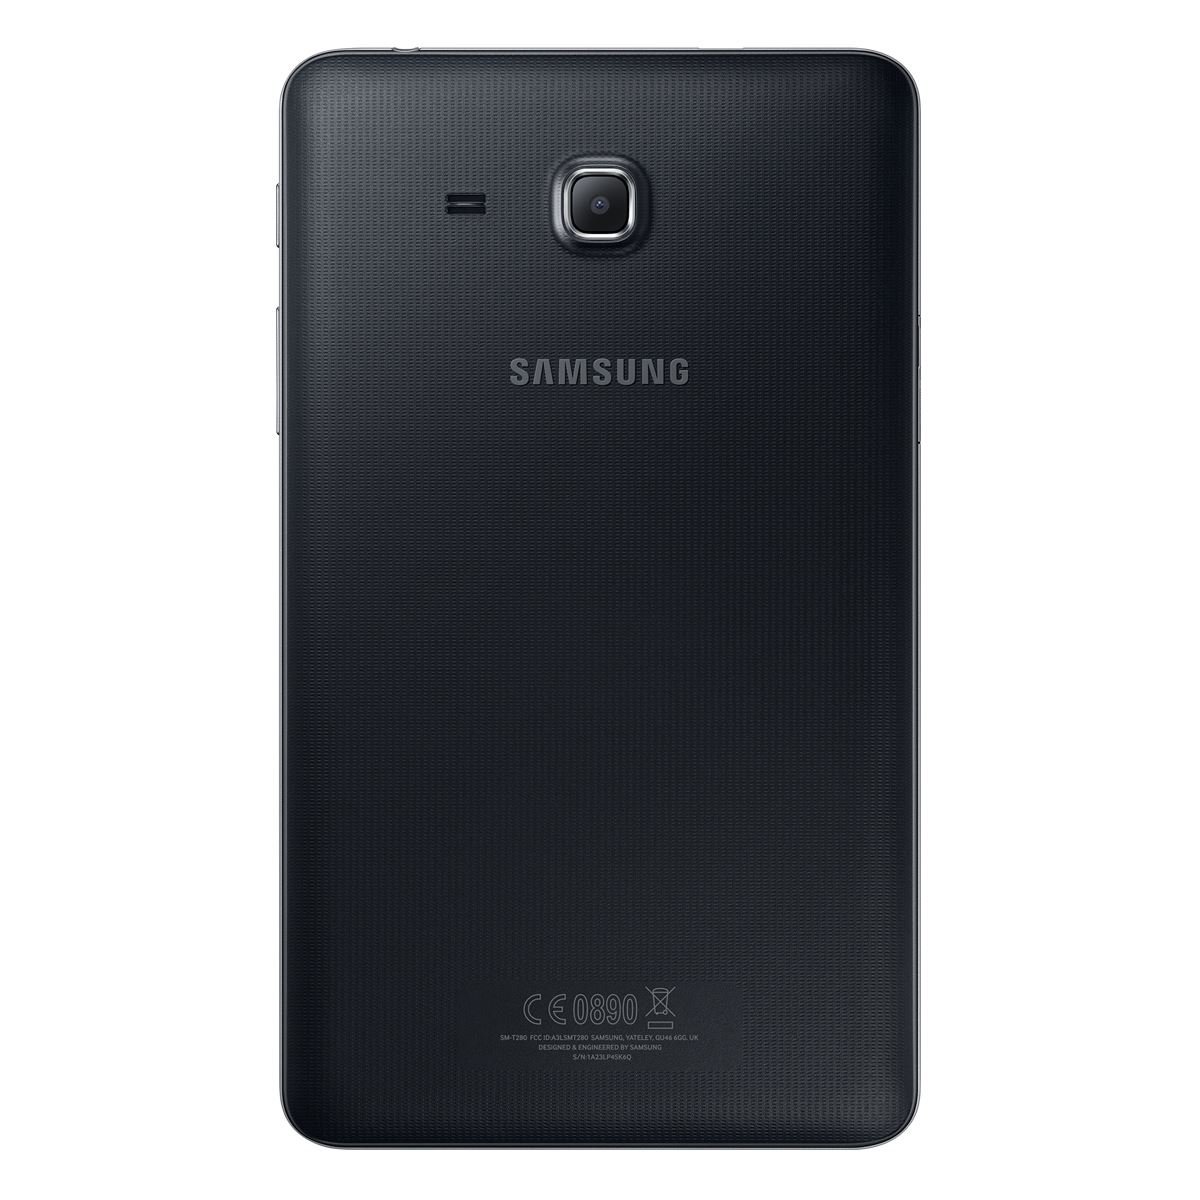 Galaxy Tab A 7" Negra 1.5gb Sm-T280nzkamxo